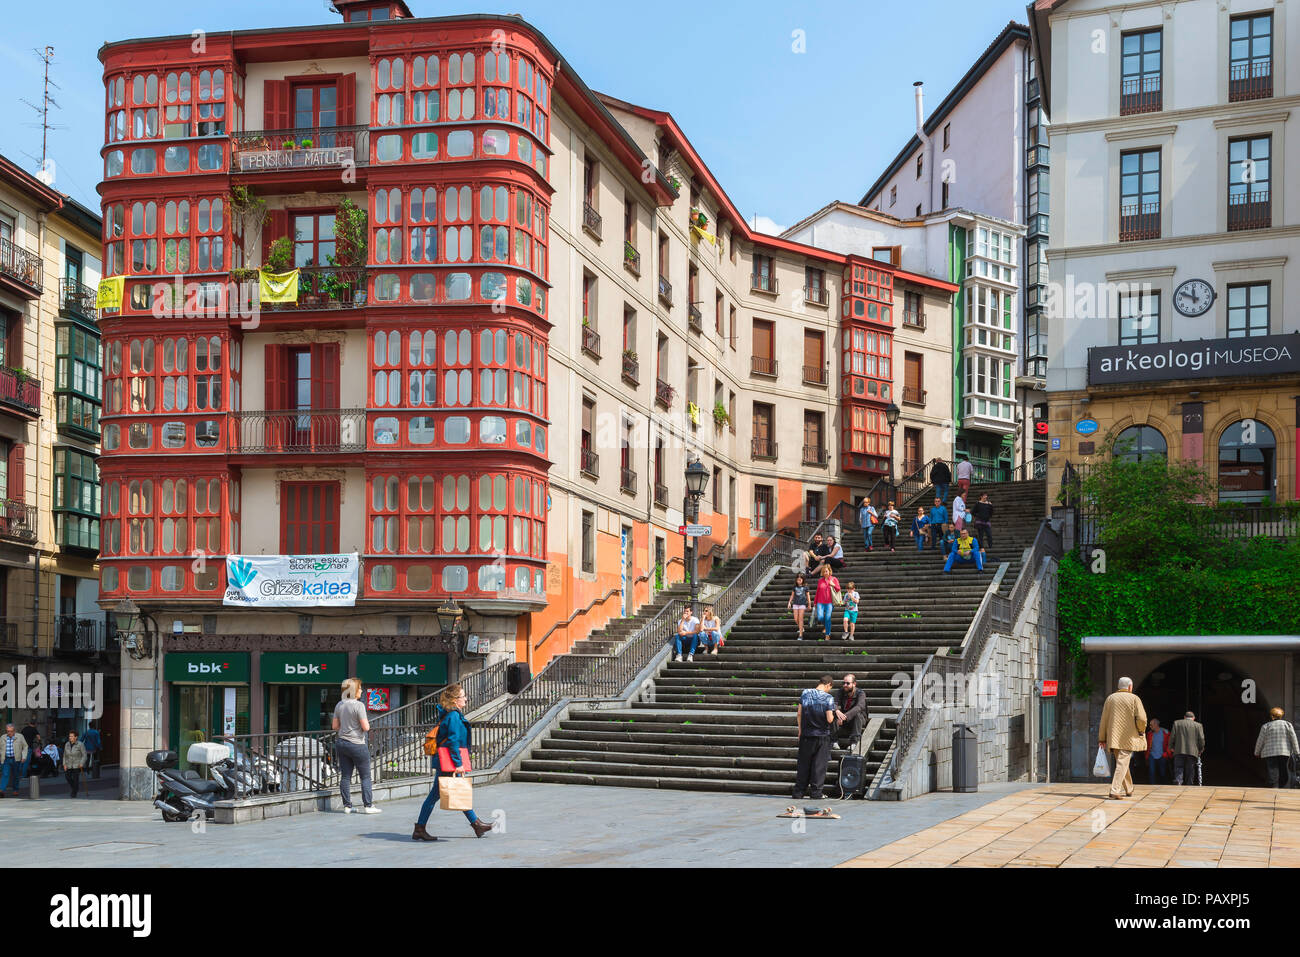 La vieille ville de Bilbao, vue des bâtiments et des personnes dans la Plaza de Unamuno dans le centre de la vieille ville (Casco Viejo) de Bilbao, Espagne. Banque D'Images